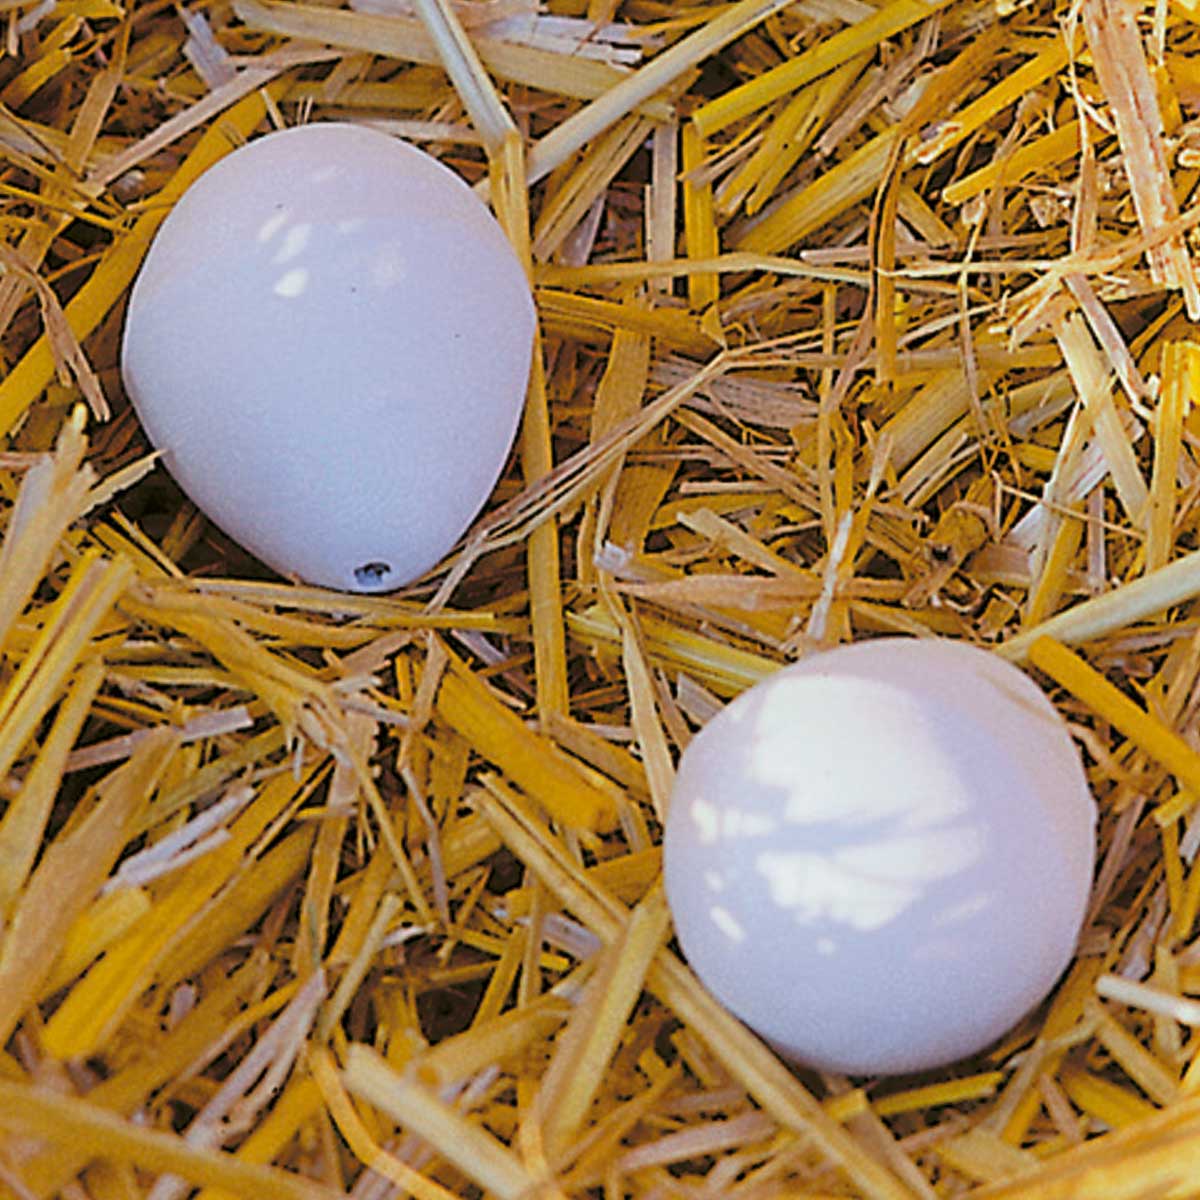 Ouă de cuib din lemn pentru găini (2 buc)